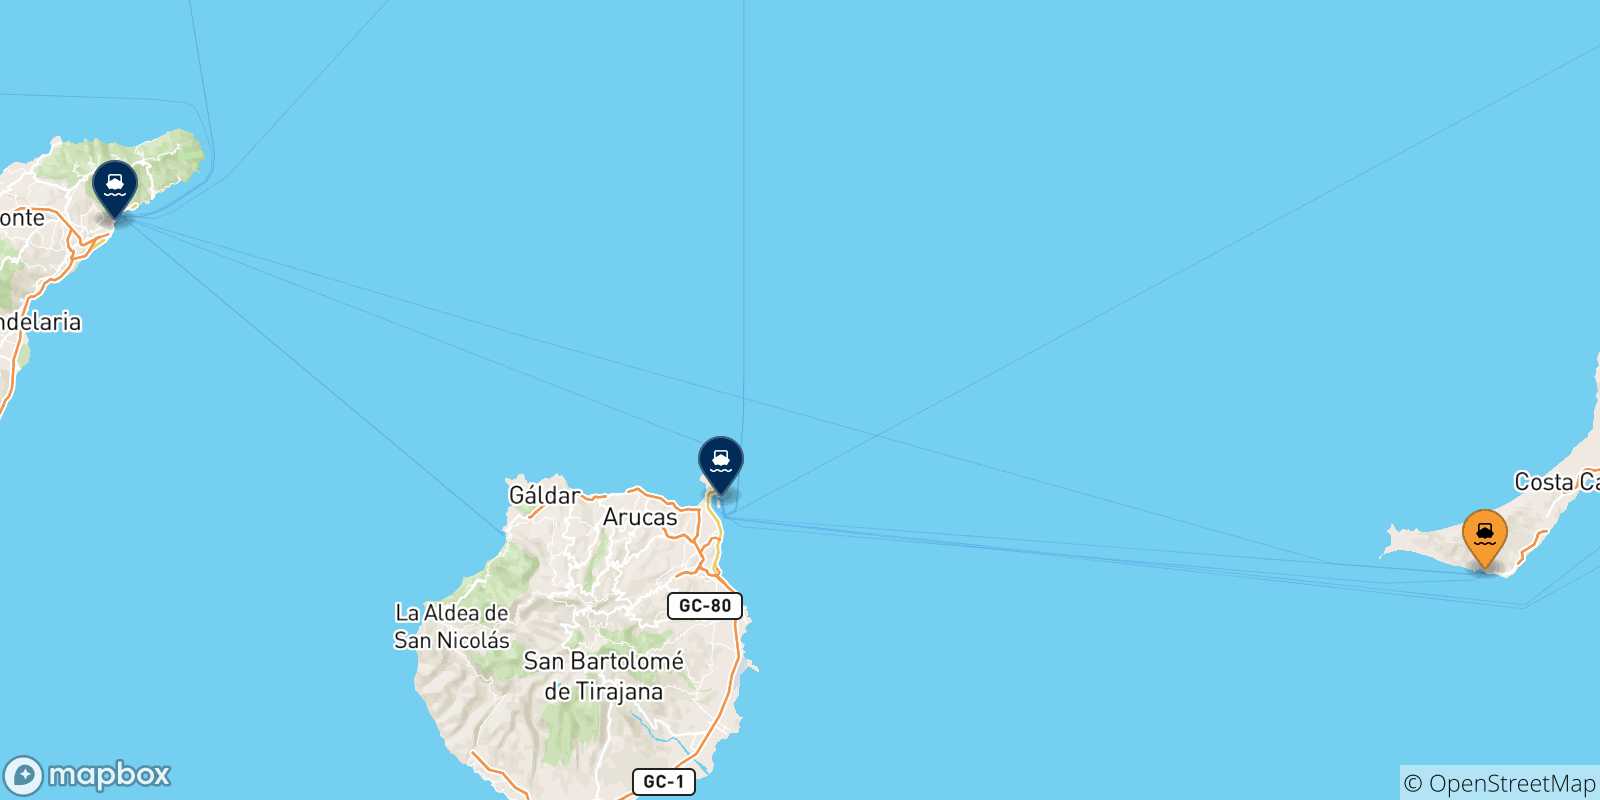 Mappa delle possibili rotte tra Morro Jable (Fuerteventura) e la Spagna